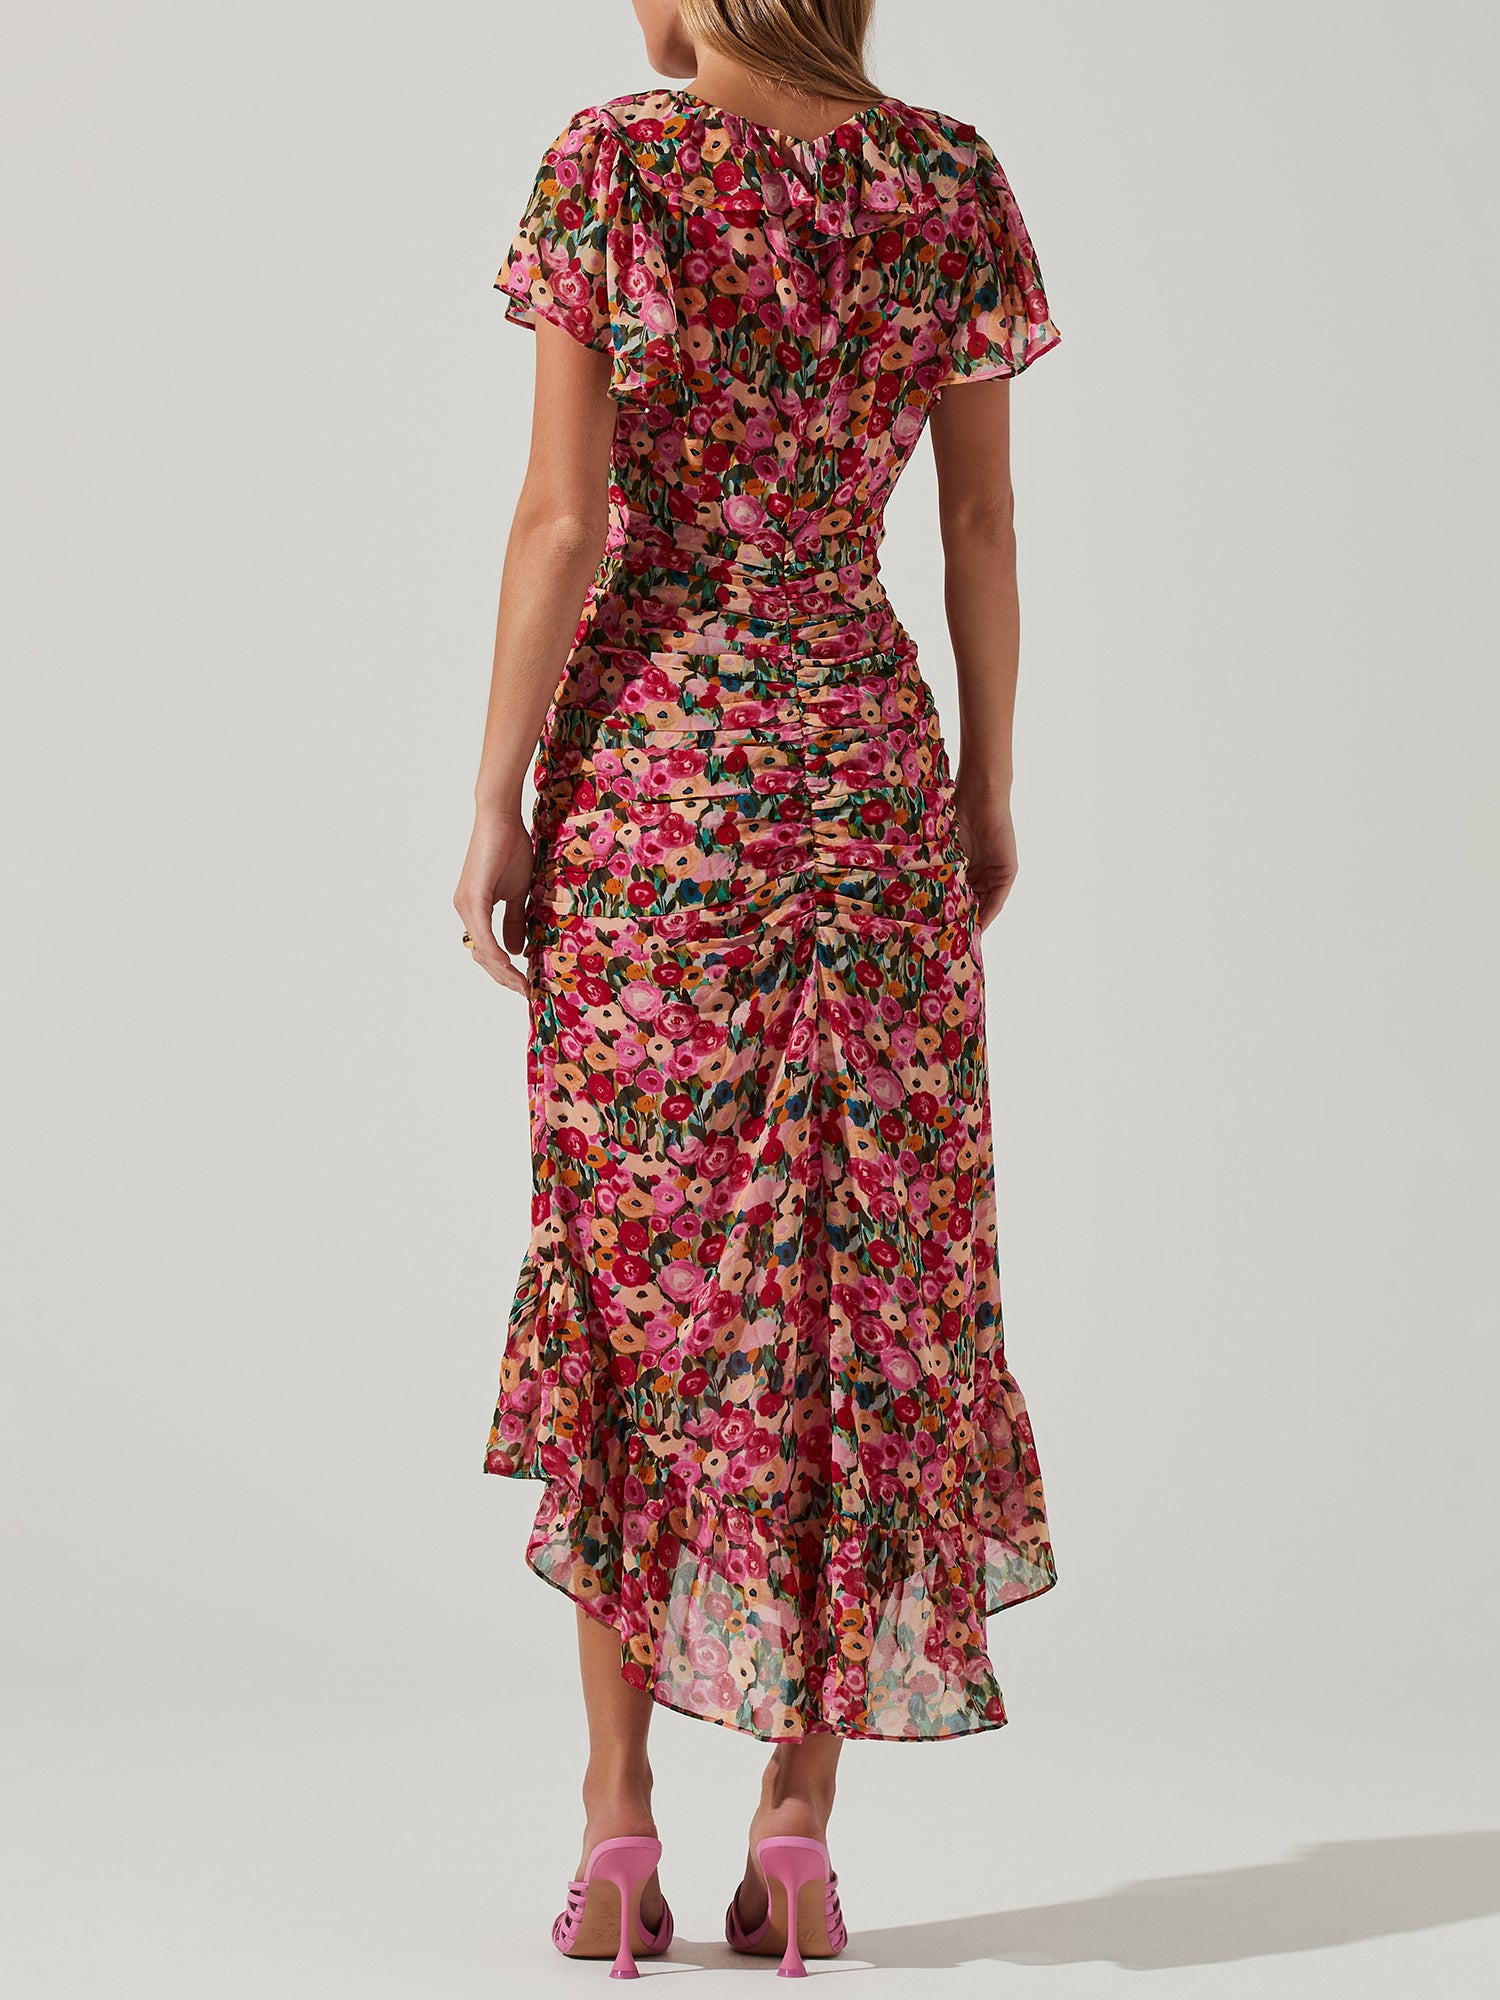 ASTR Floral Ruched Dress - Dresses